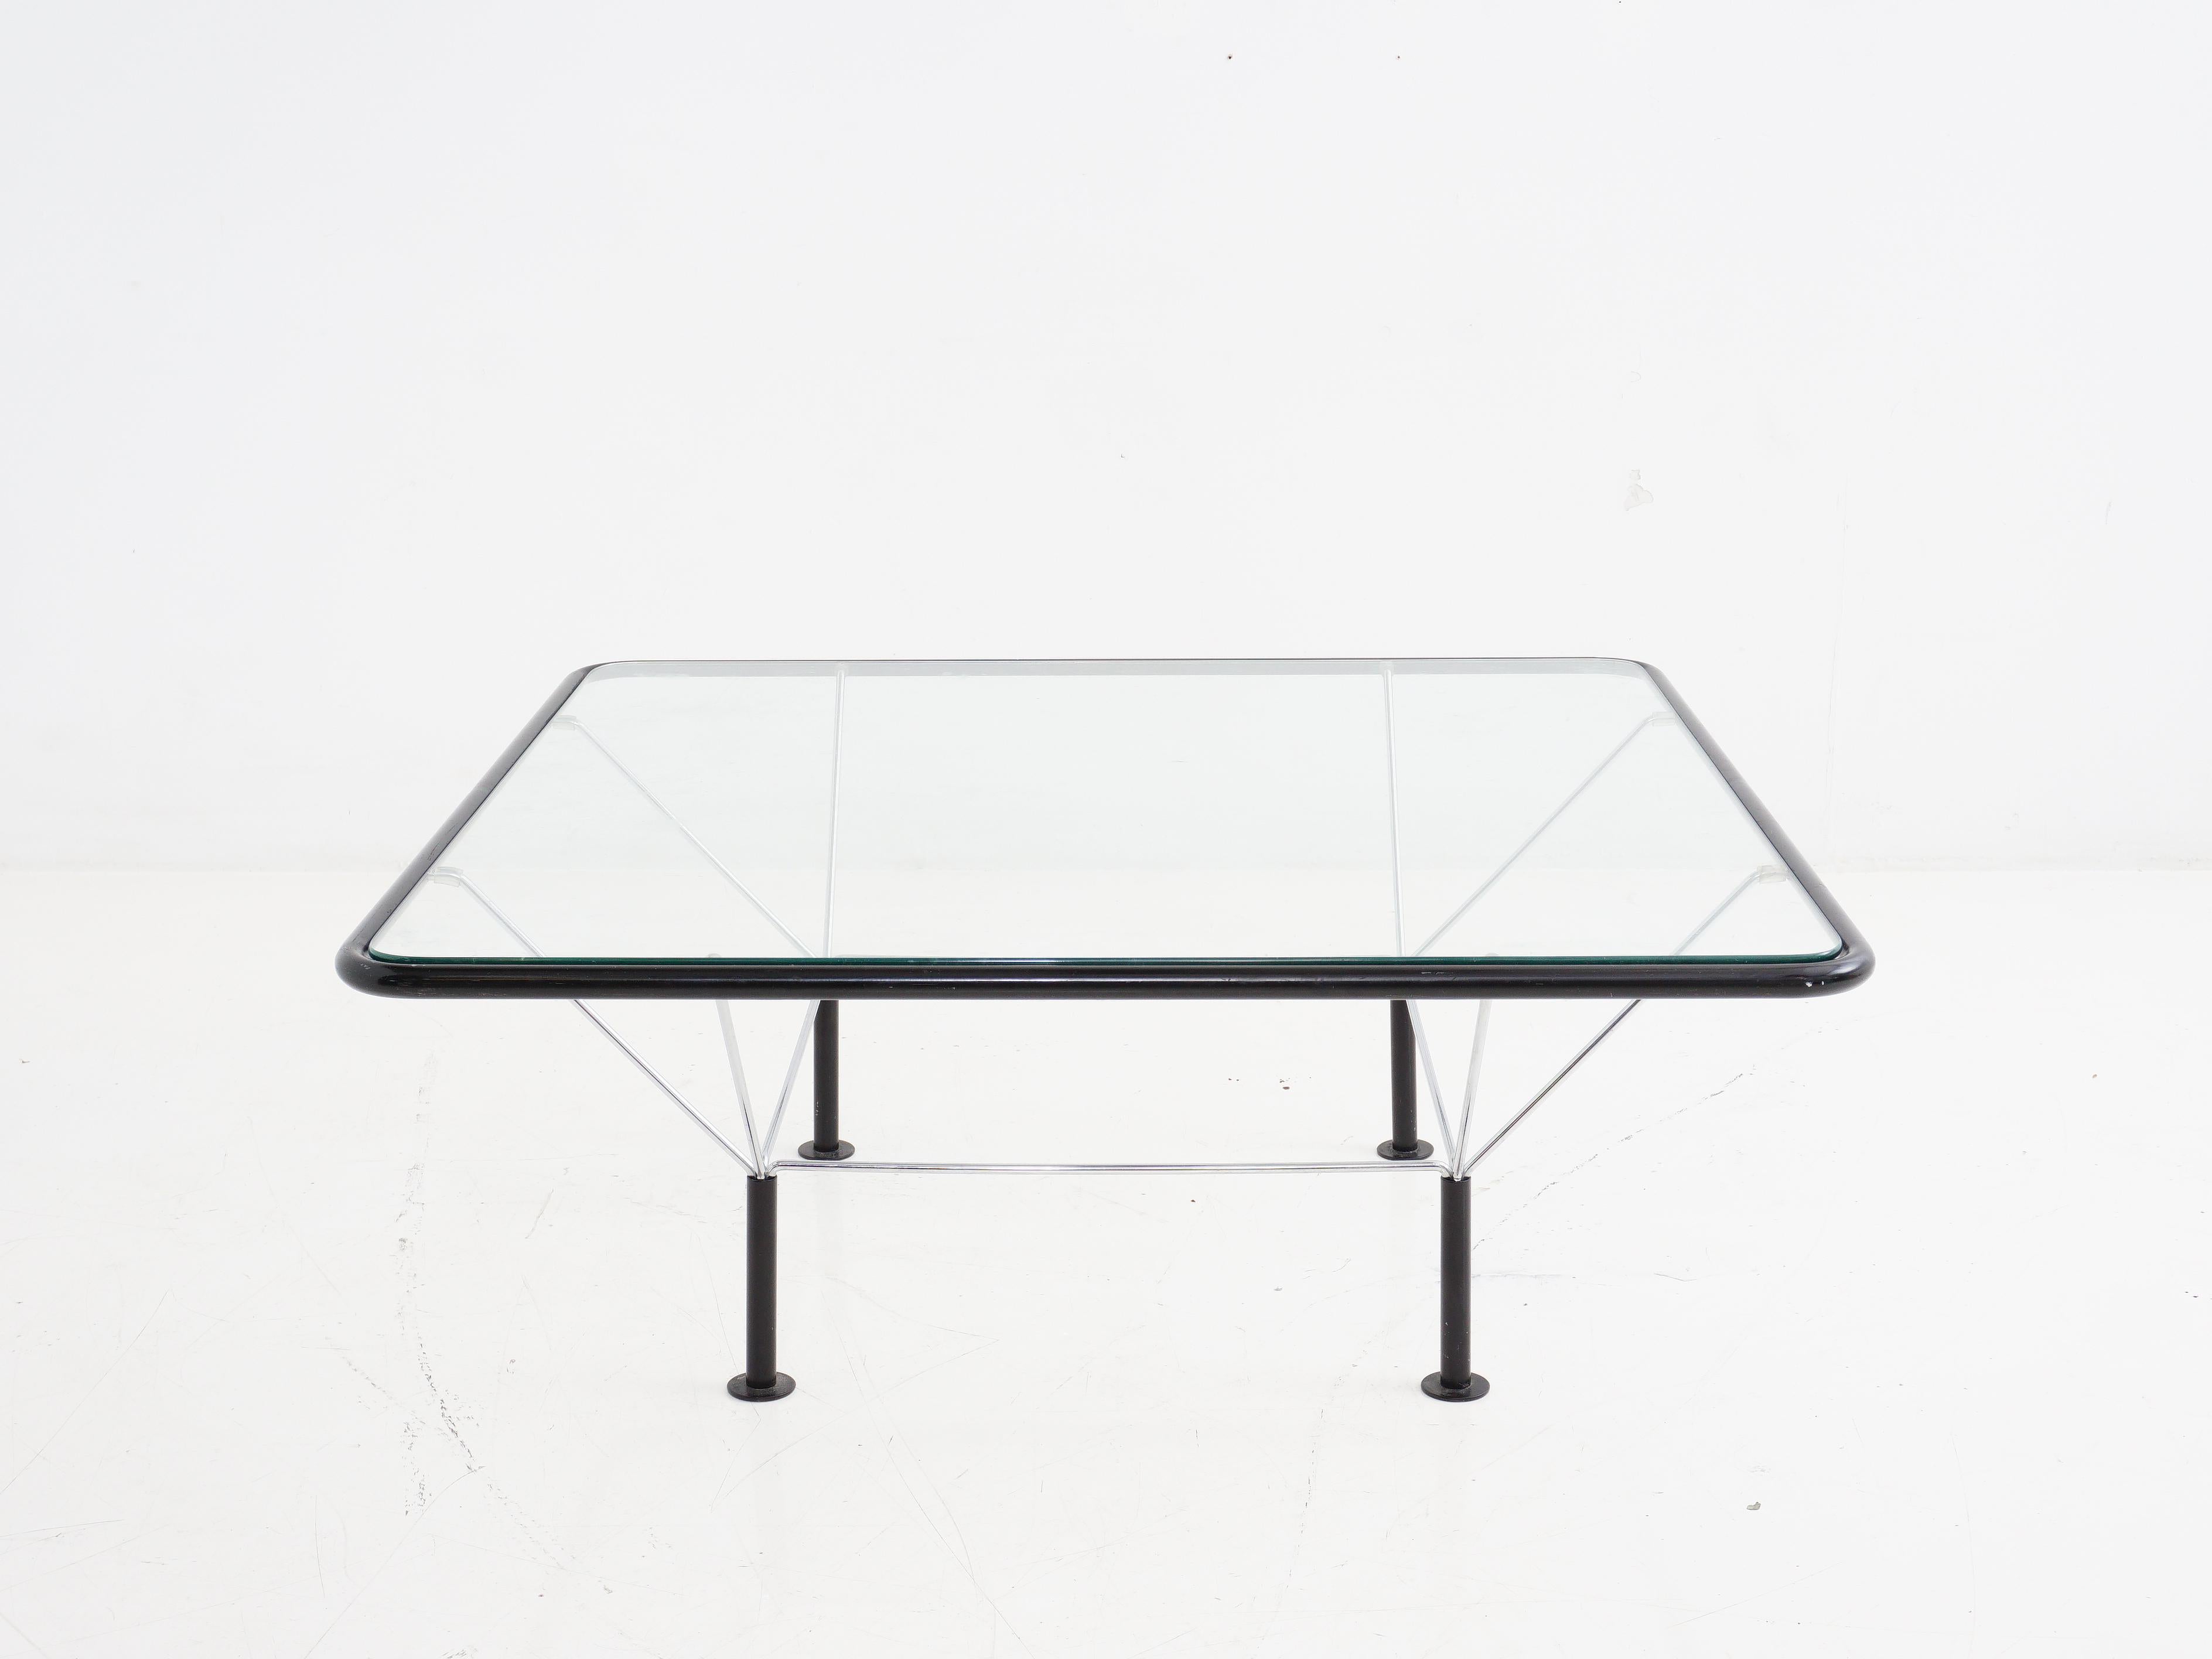 La table basse de Niels Bendtsen, conçue au Danemark dans les années 1970, témoigne d'une élégante simplicité. Doté d'un plateau carré en verre, il marie sans effort forme et fonction, ce qui en fait une pièce maîtresse intemporelle pour tout espace